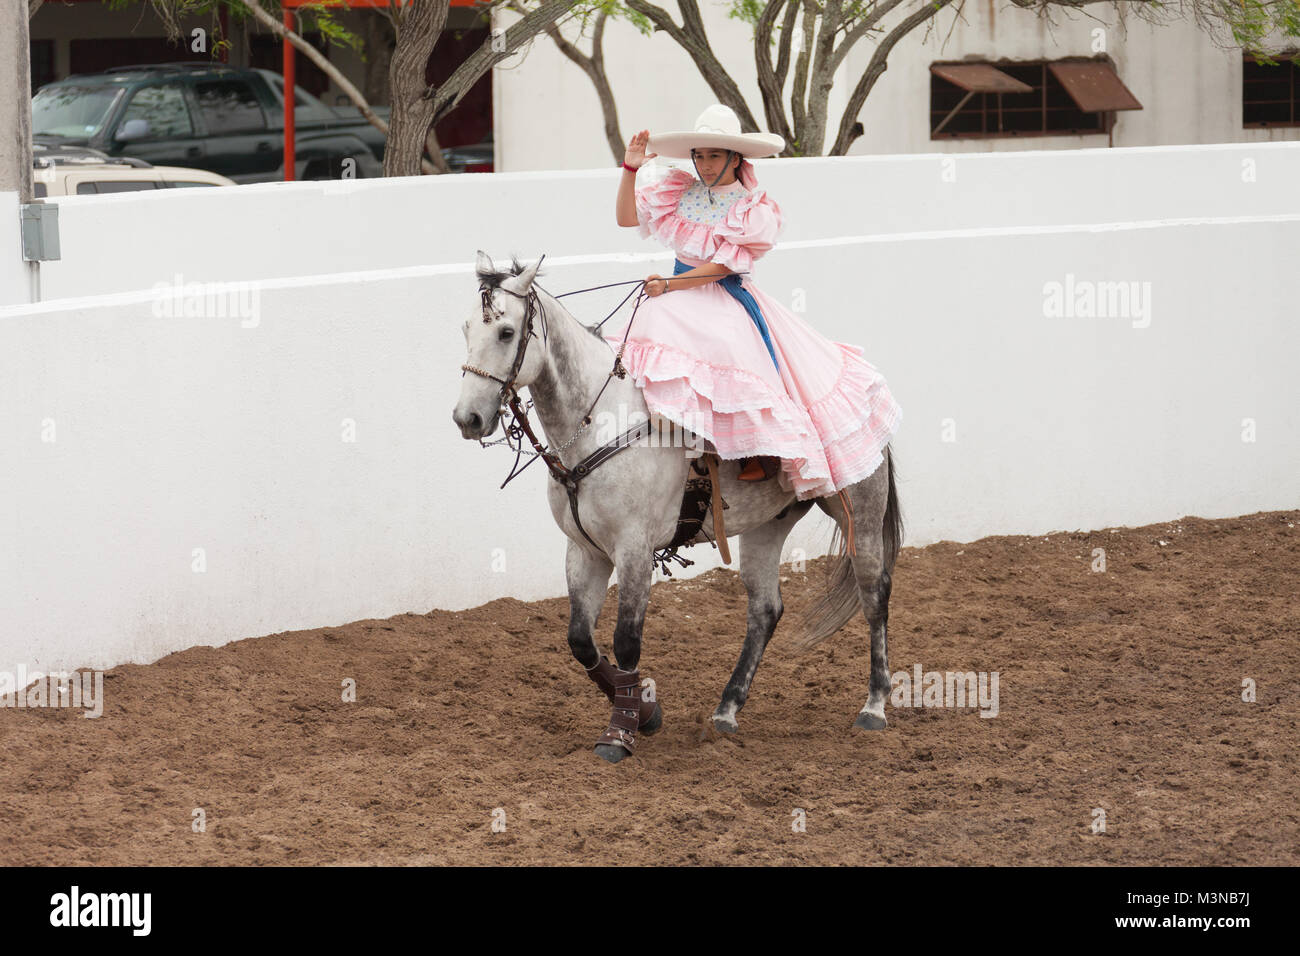 Matamoros, Tamaulipas, Mexique - Le 26 février 2017, les Fiestas Mexicanas fait partie du Charro Jours Fiesta - Fiestas Mexicanas, un bi-national pari festival Banque D'Images